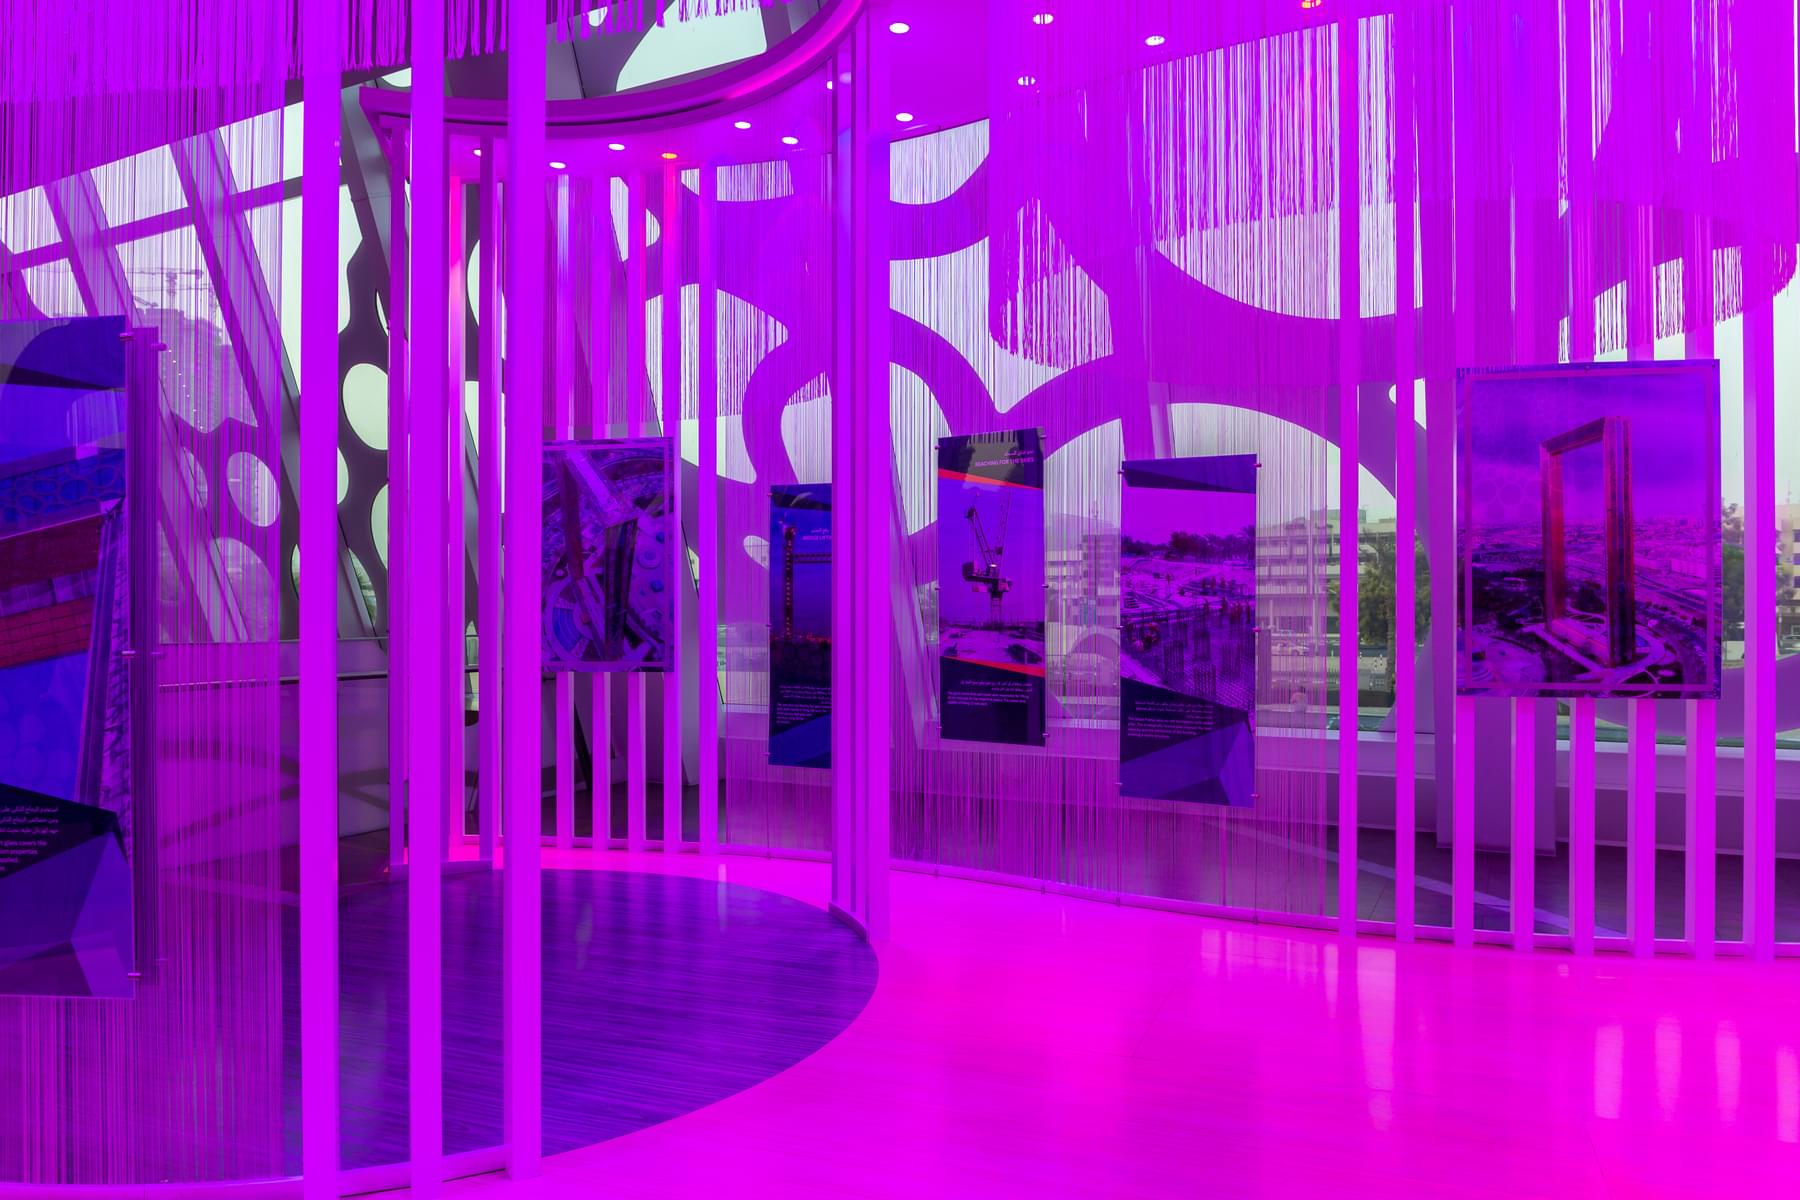 Whiz into the Future at Future Gallery in Dubai Frame